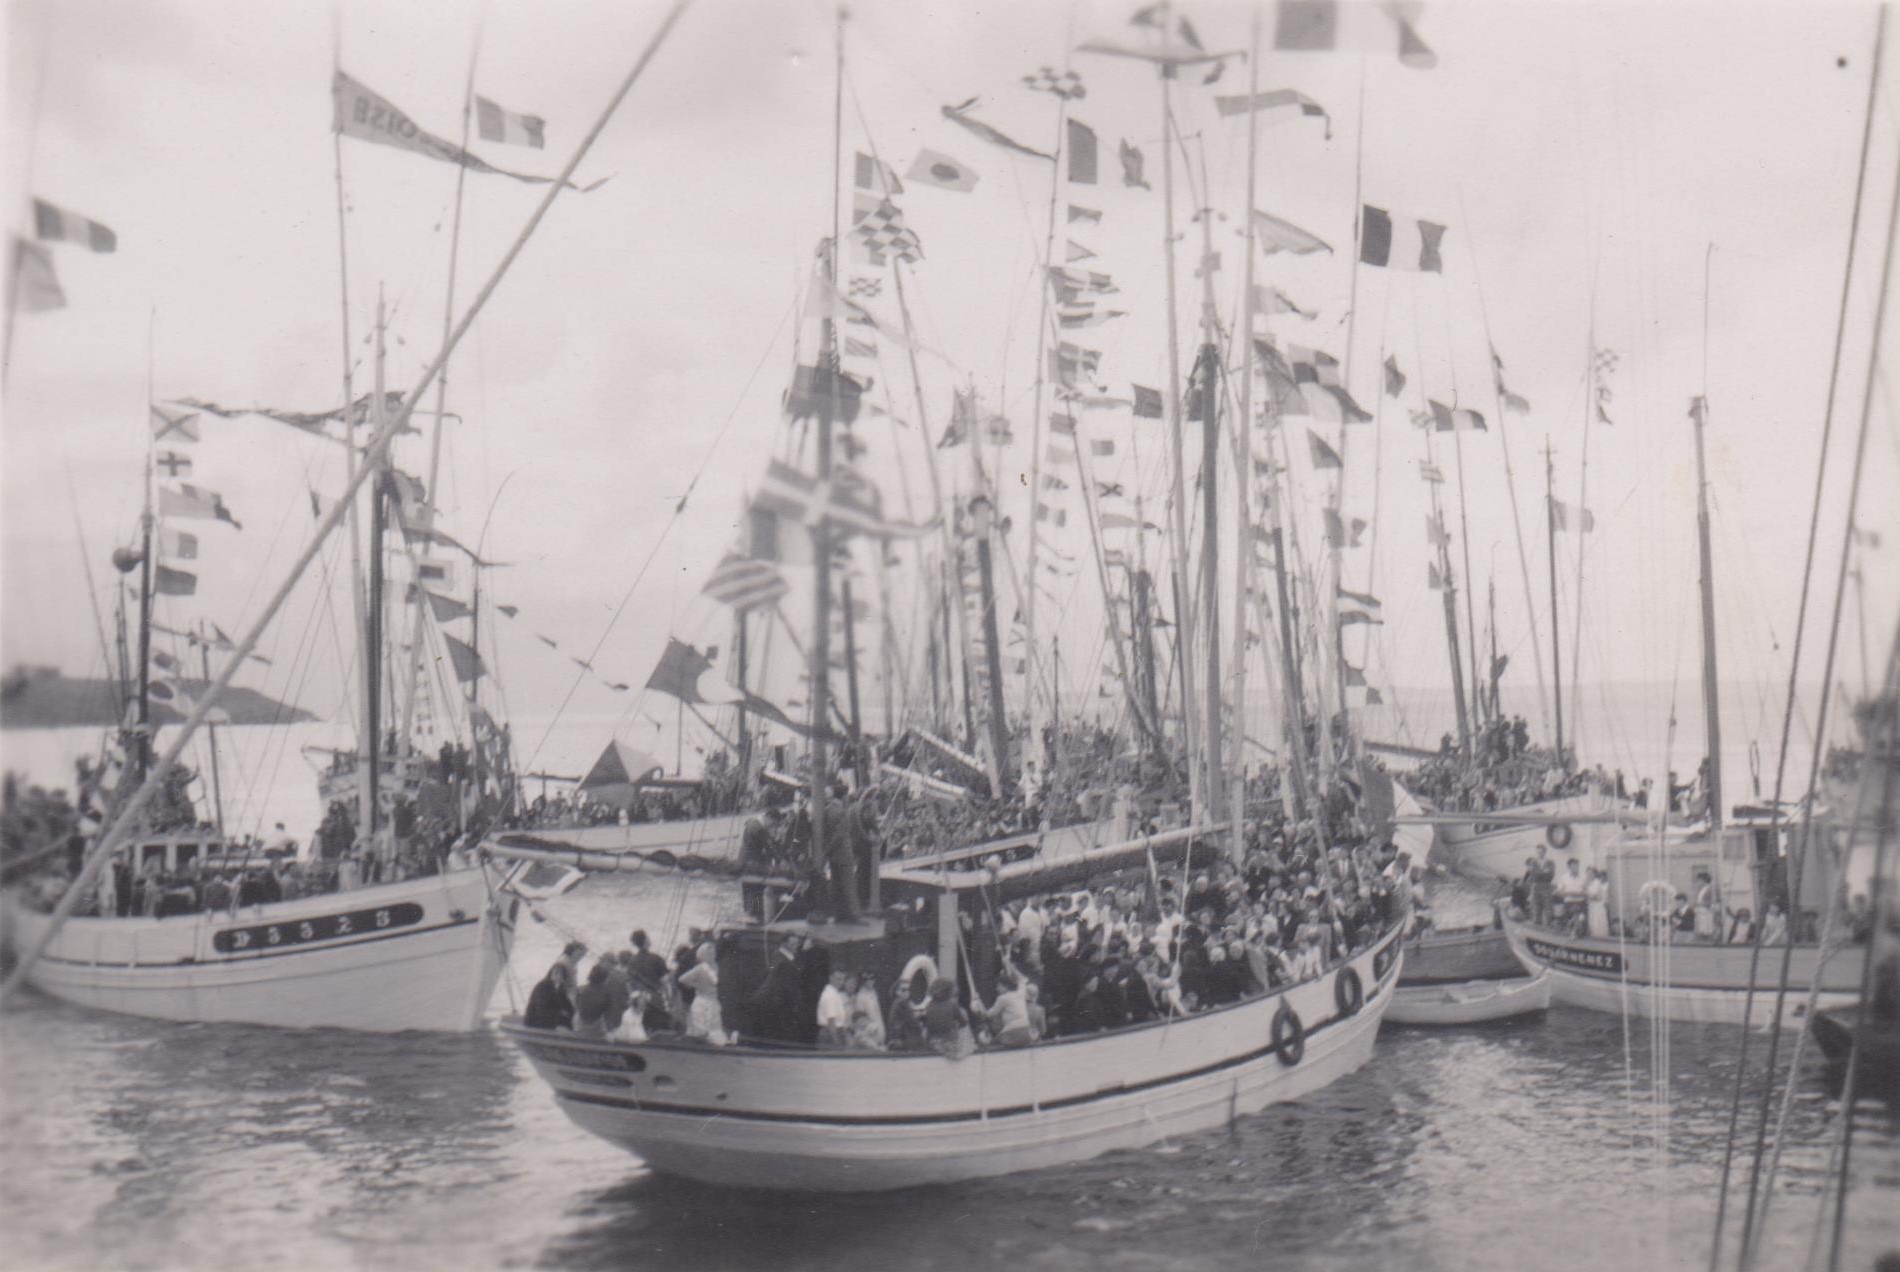 Source : Collection Bernard Gourlaouen - Bénédiction de la mer en Juillet 1950 : à gauche, le malamok "Petite Françoise", DZ 3375